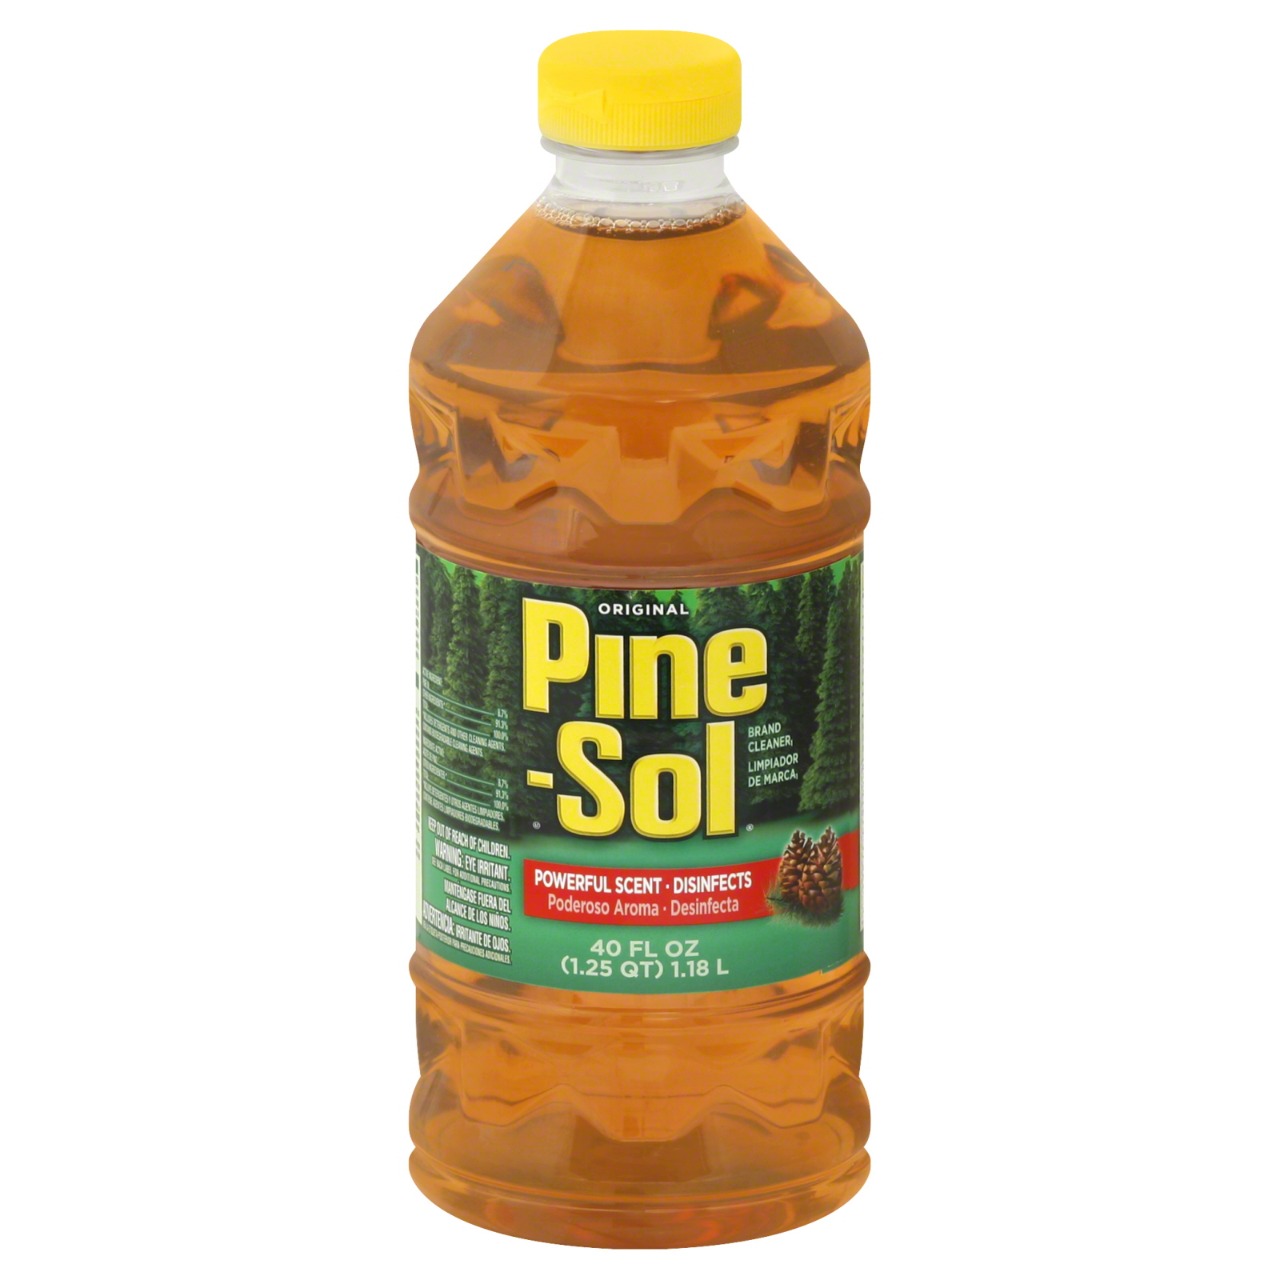 Pine Sol Liquid Cleaner 1.18L